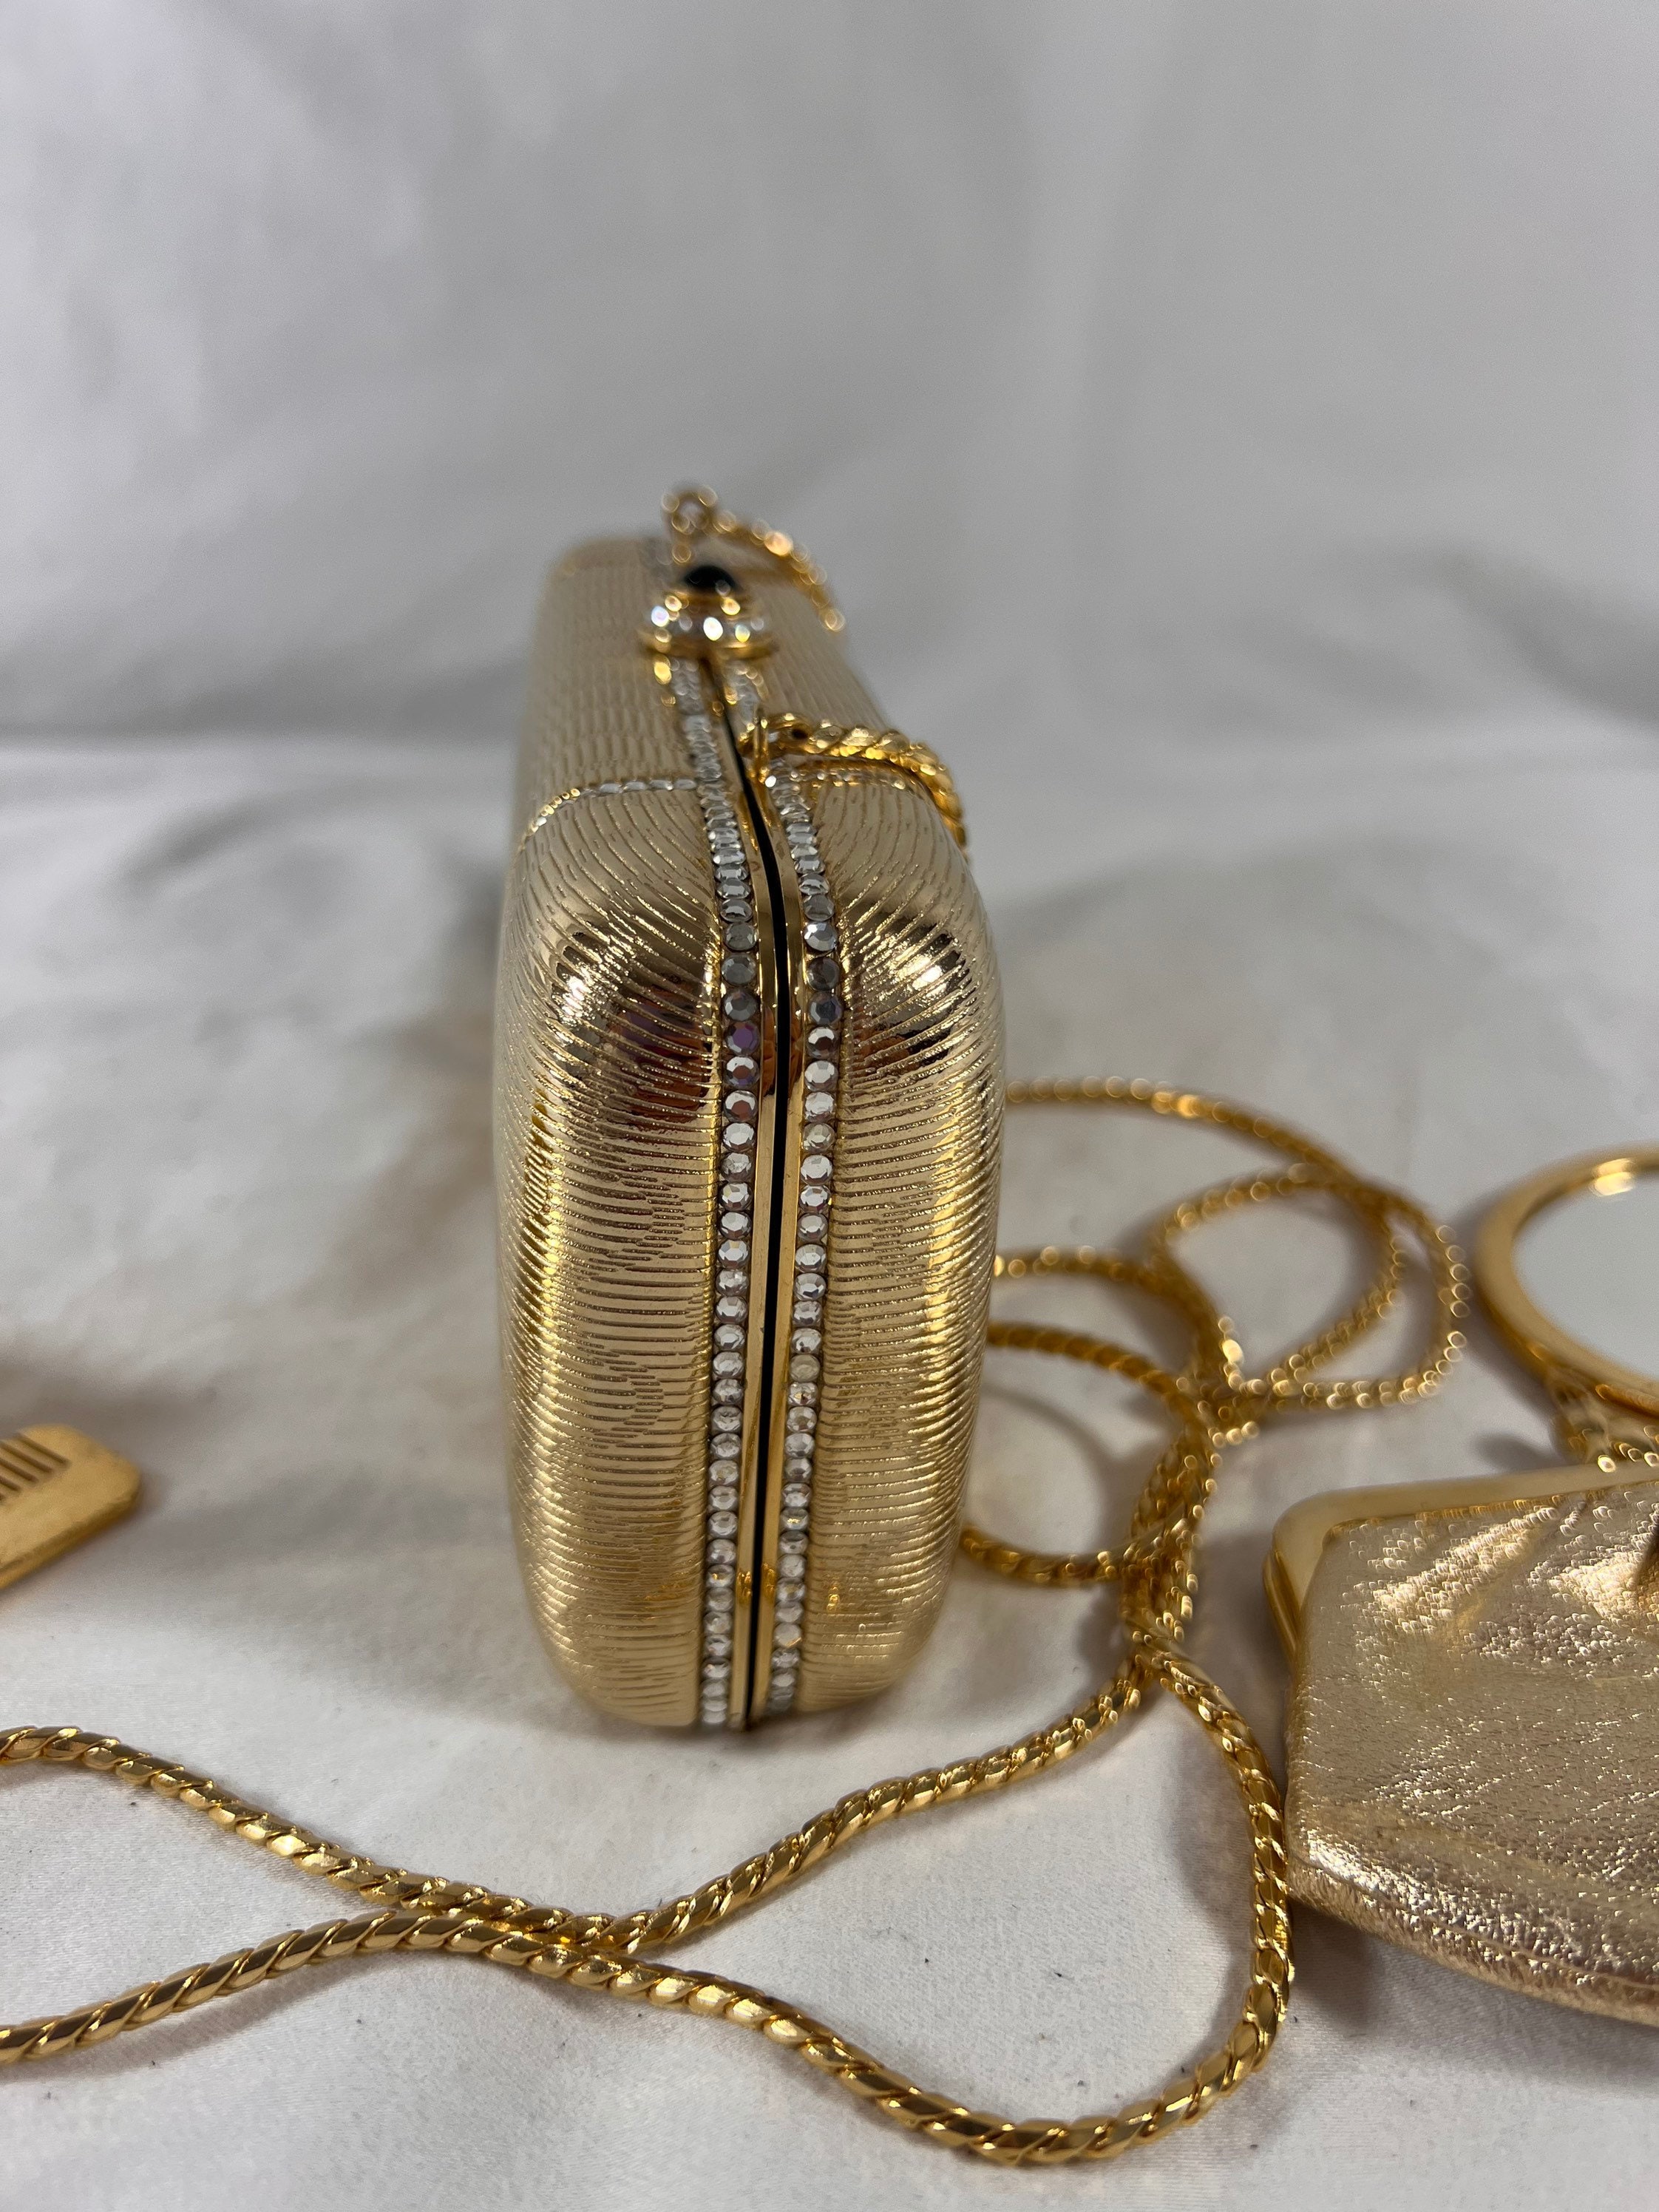 Judith Leiber Crystal Embellished Khloé's Pot of Gold Clutch Bag